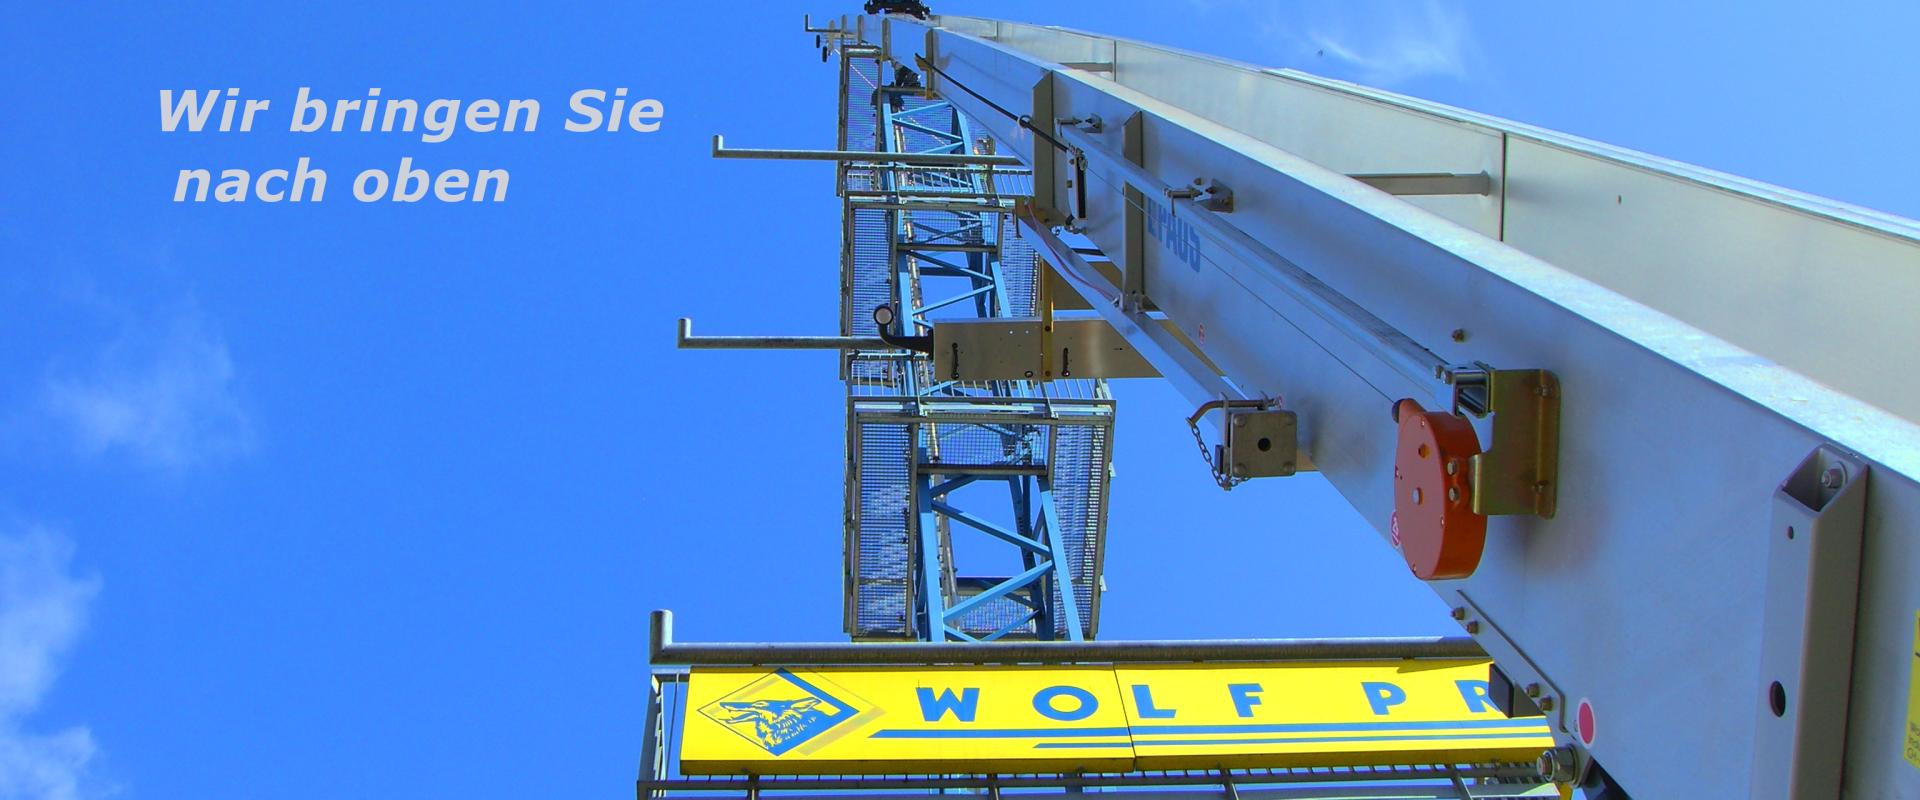 Wolf Erzeugnisse AG  Industriestrasse 8 6055 Alpnach Dorf Obwalden Schweiz Anhängerkrane Möbelaufzüge Bauaufzüge Arbeitsbühnen Glashebegeräte